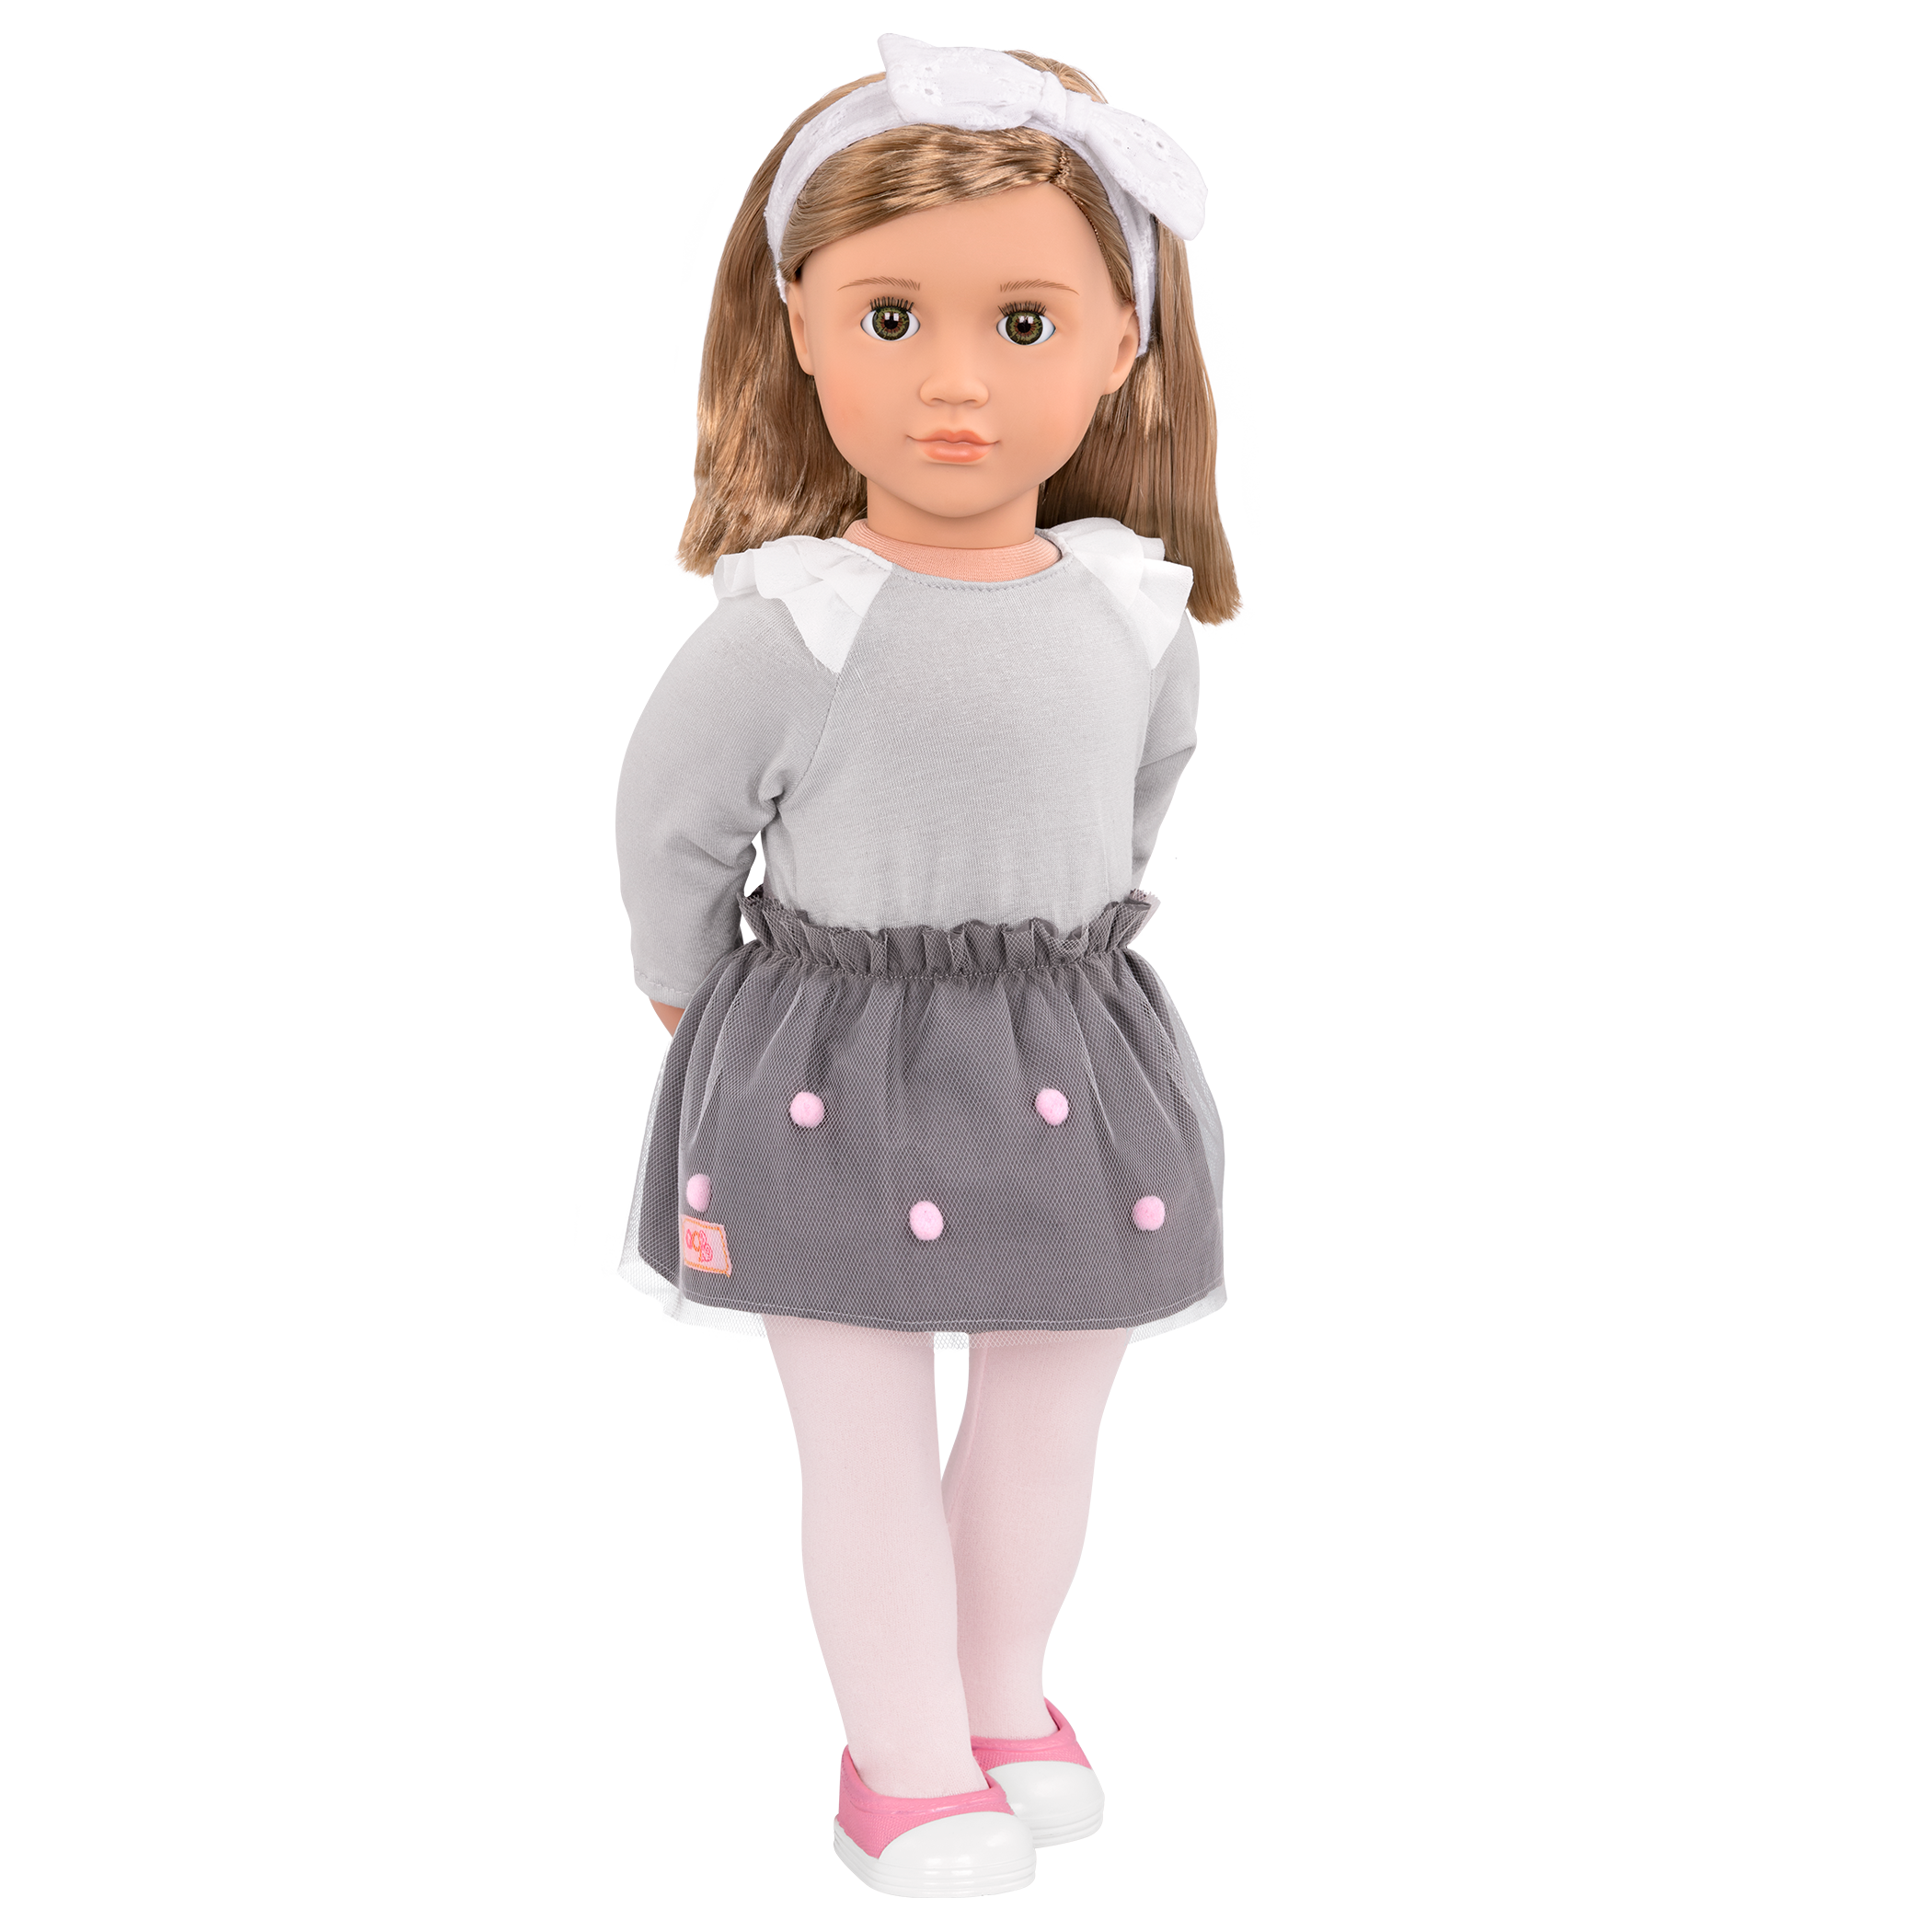 Bina 18-inch Doll with pom pom skirt